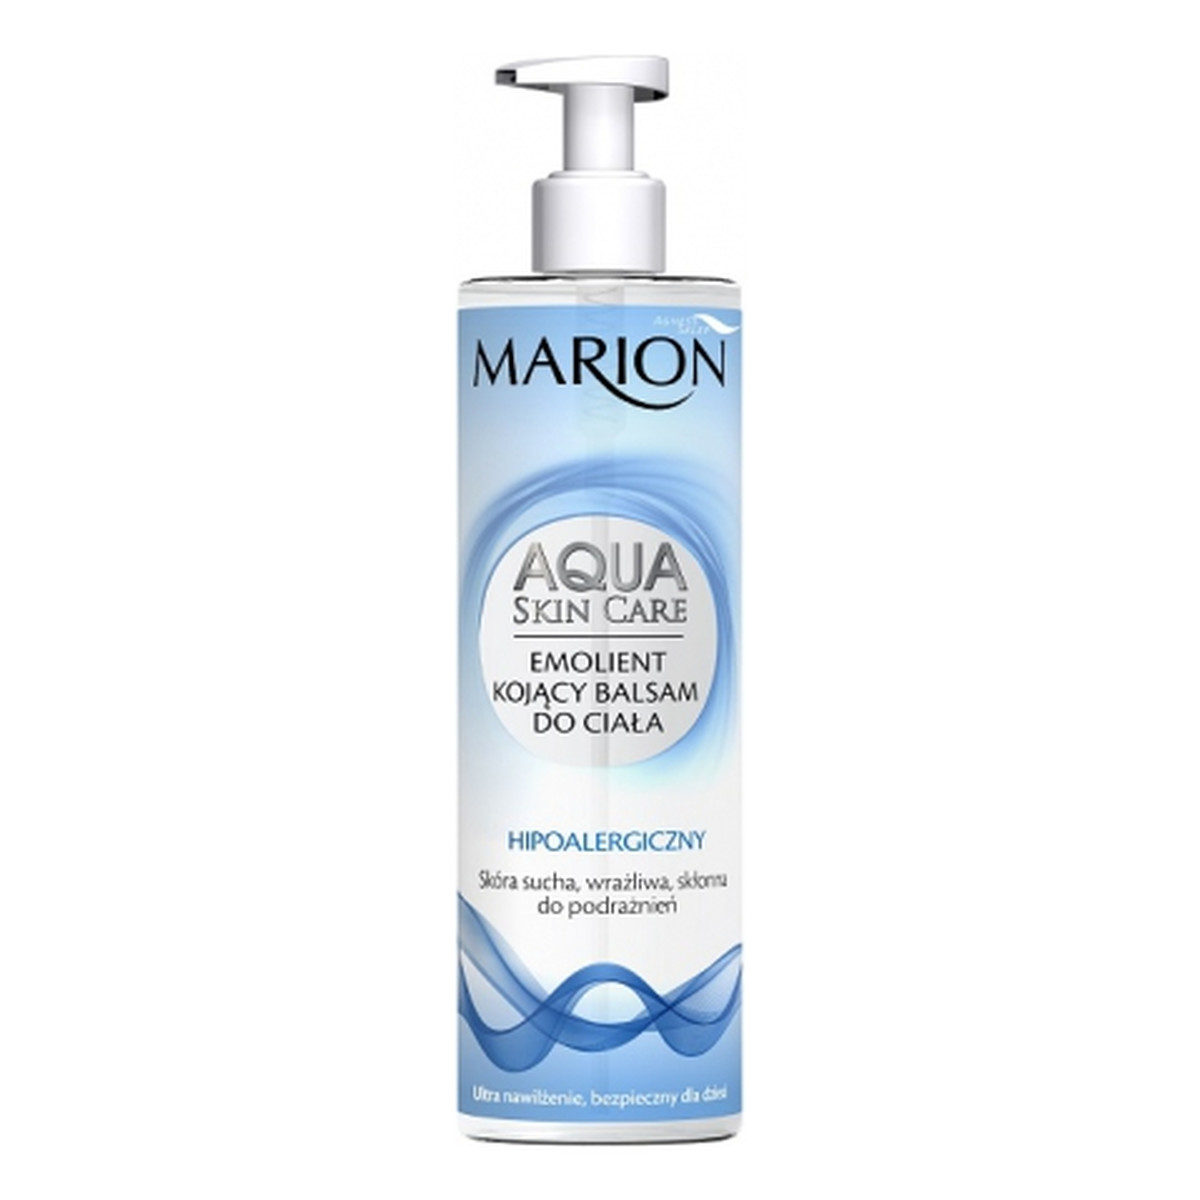 Marion Aqua Skin Care Emolient Kojący Balsam Do Ciała 300ml